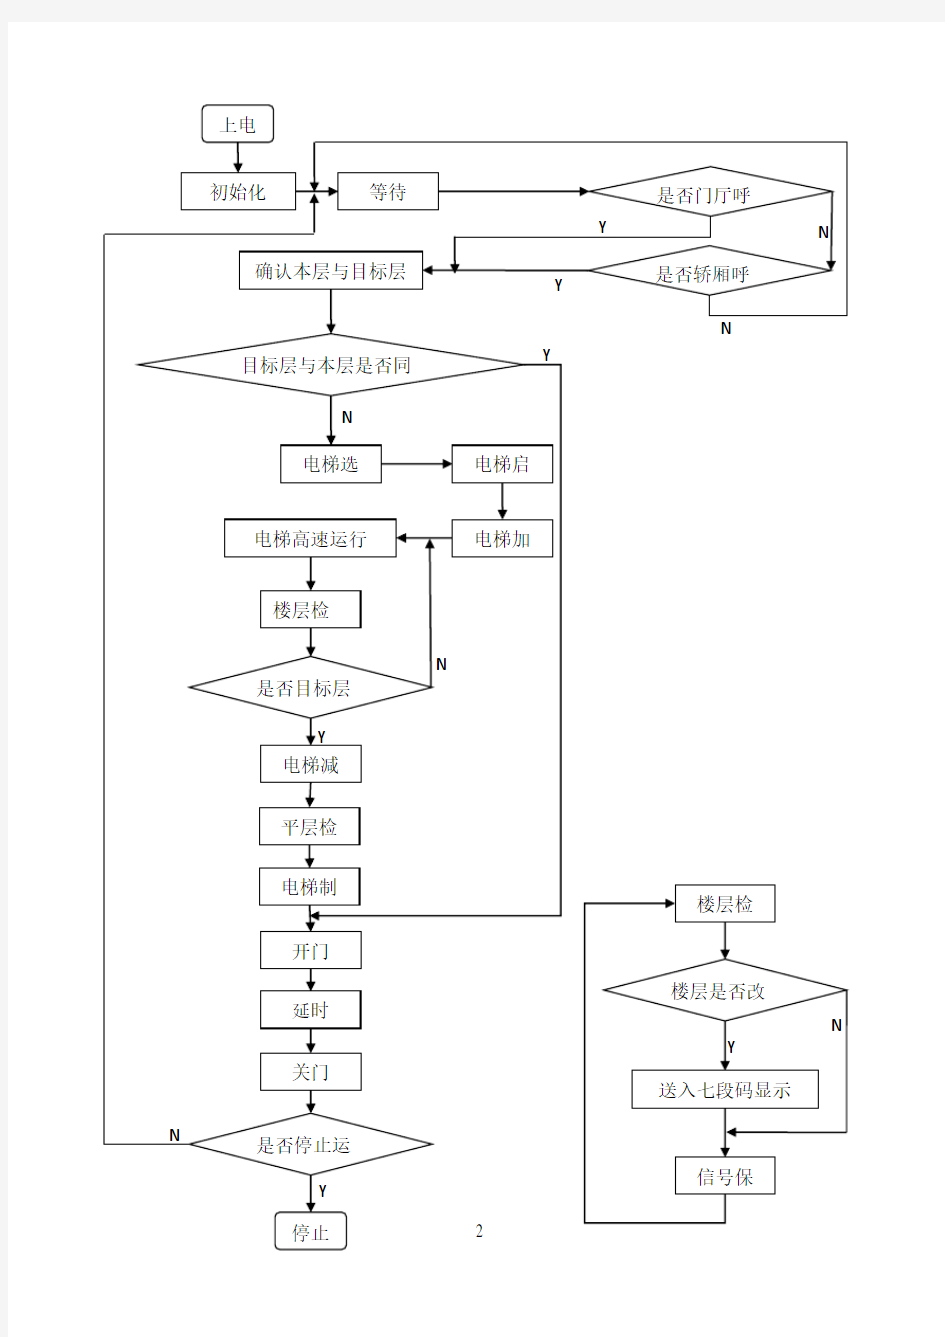 PLC控制电梯的流程图